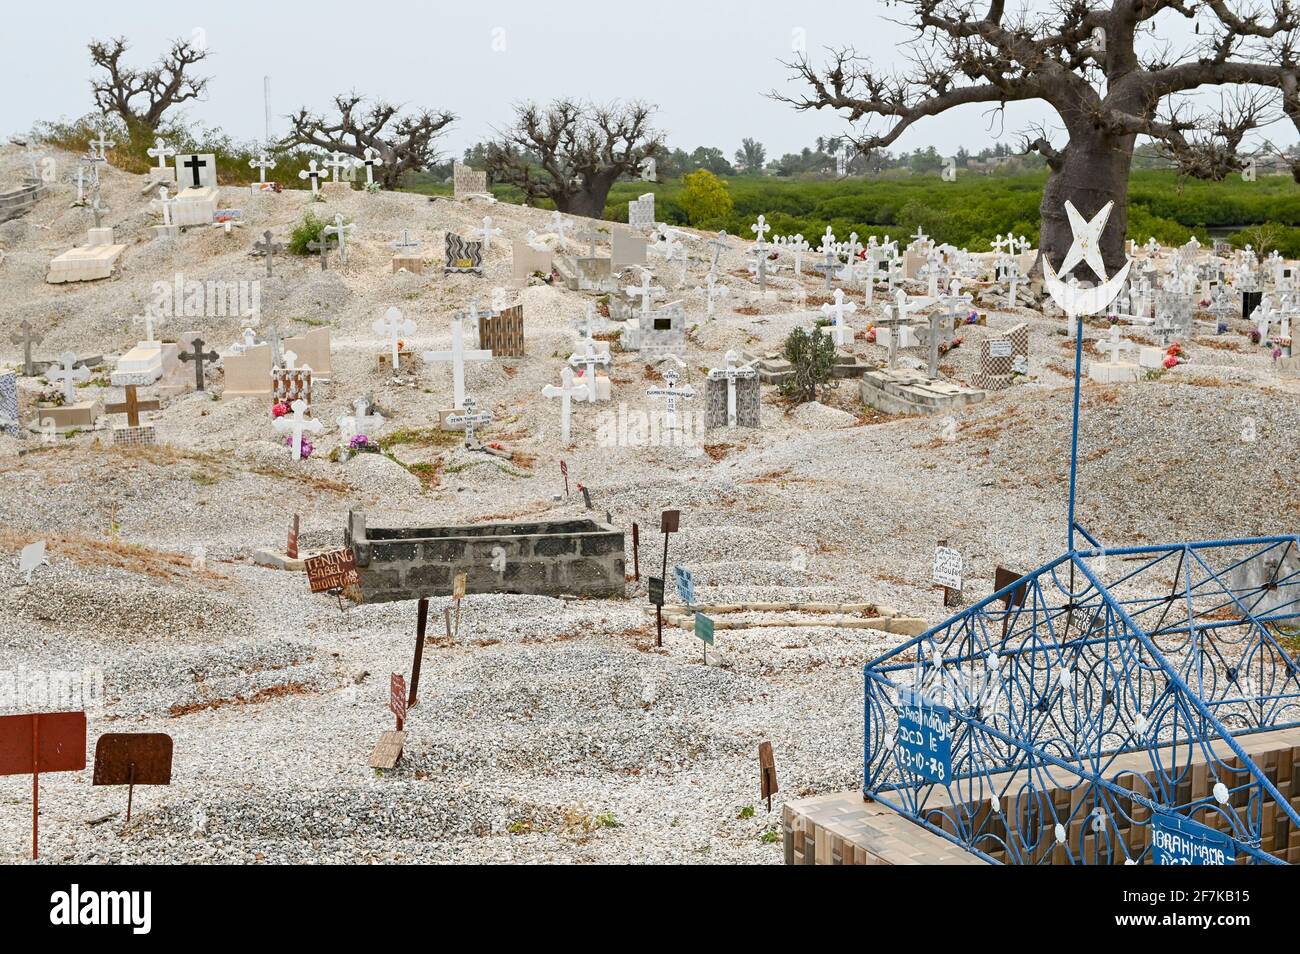 SENEGAL, Insel Fadiouth, Friedhof, gemischter Friedhof mit Gräbern für muslime und christen, Baobab-Baum Stockfoto